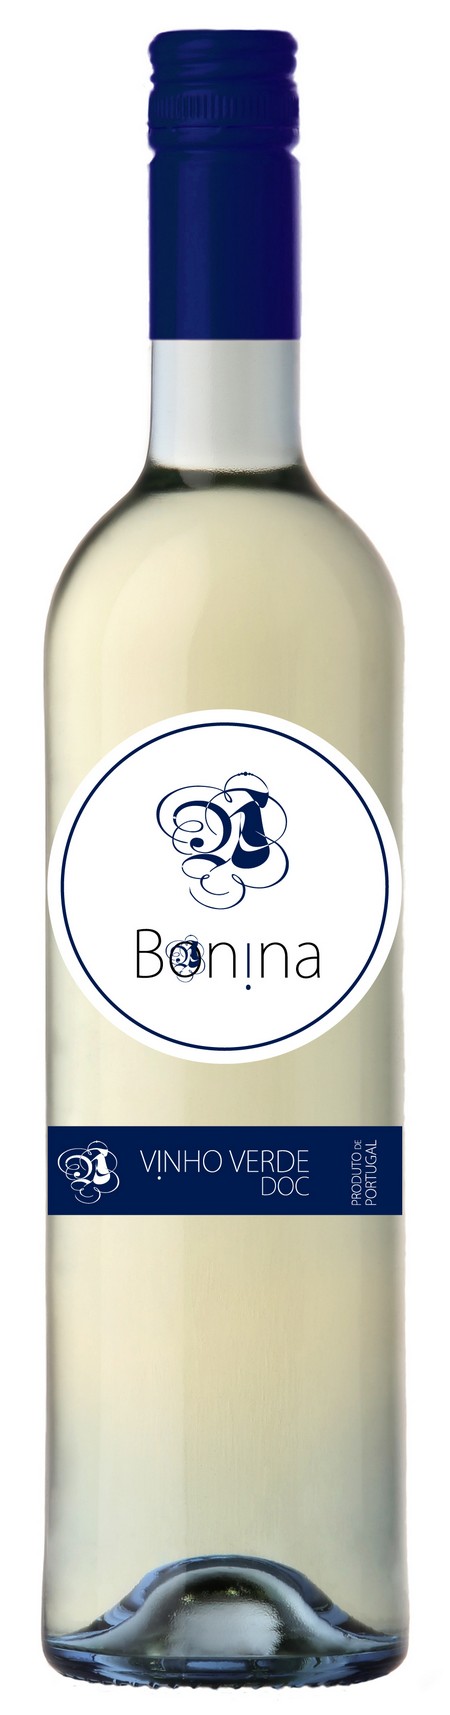 bonina-white-2014